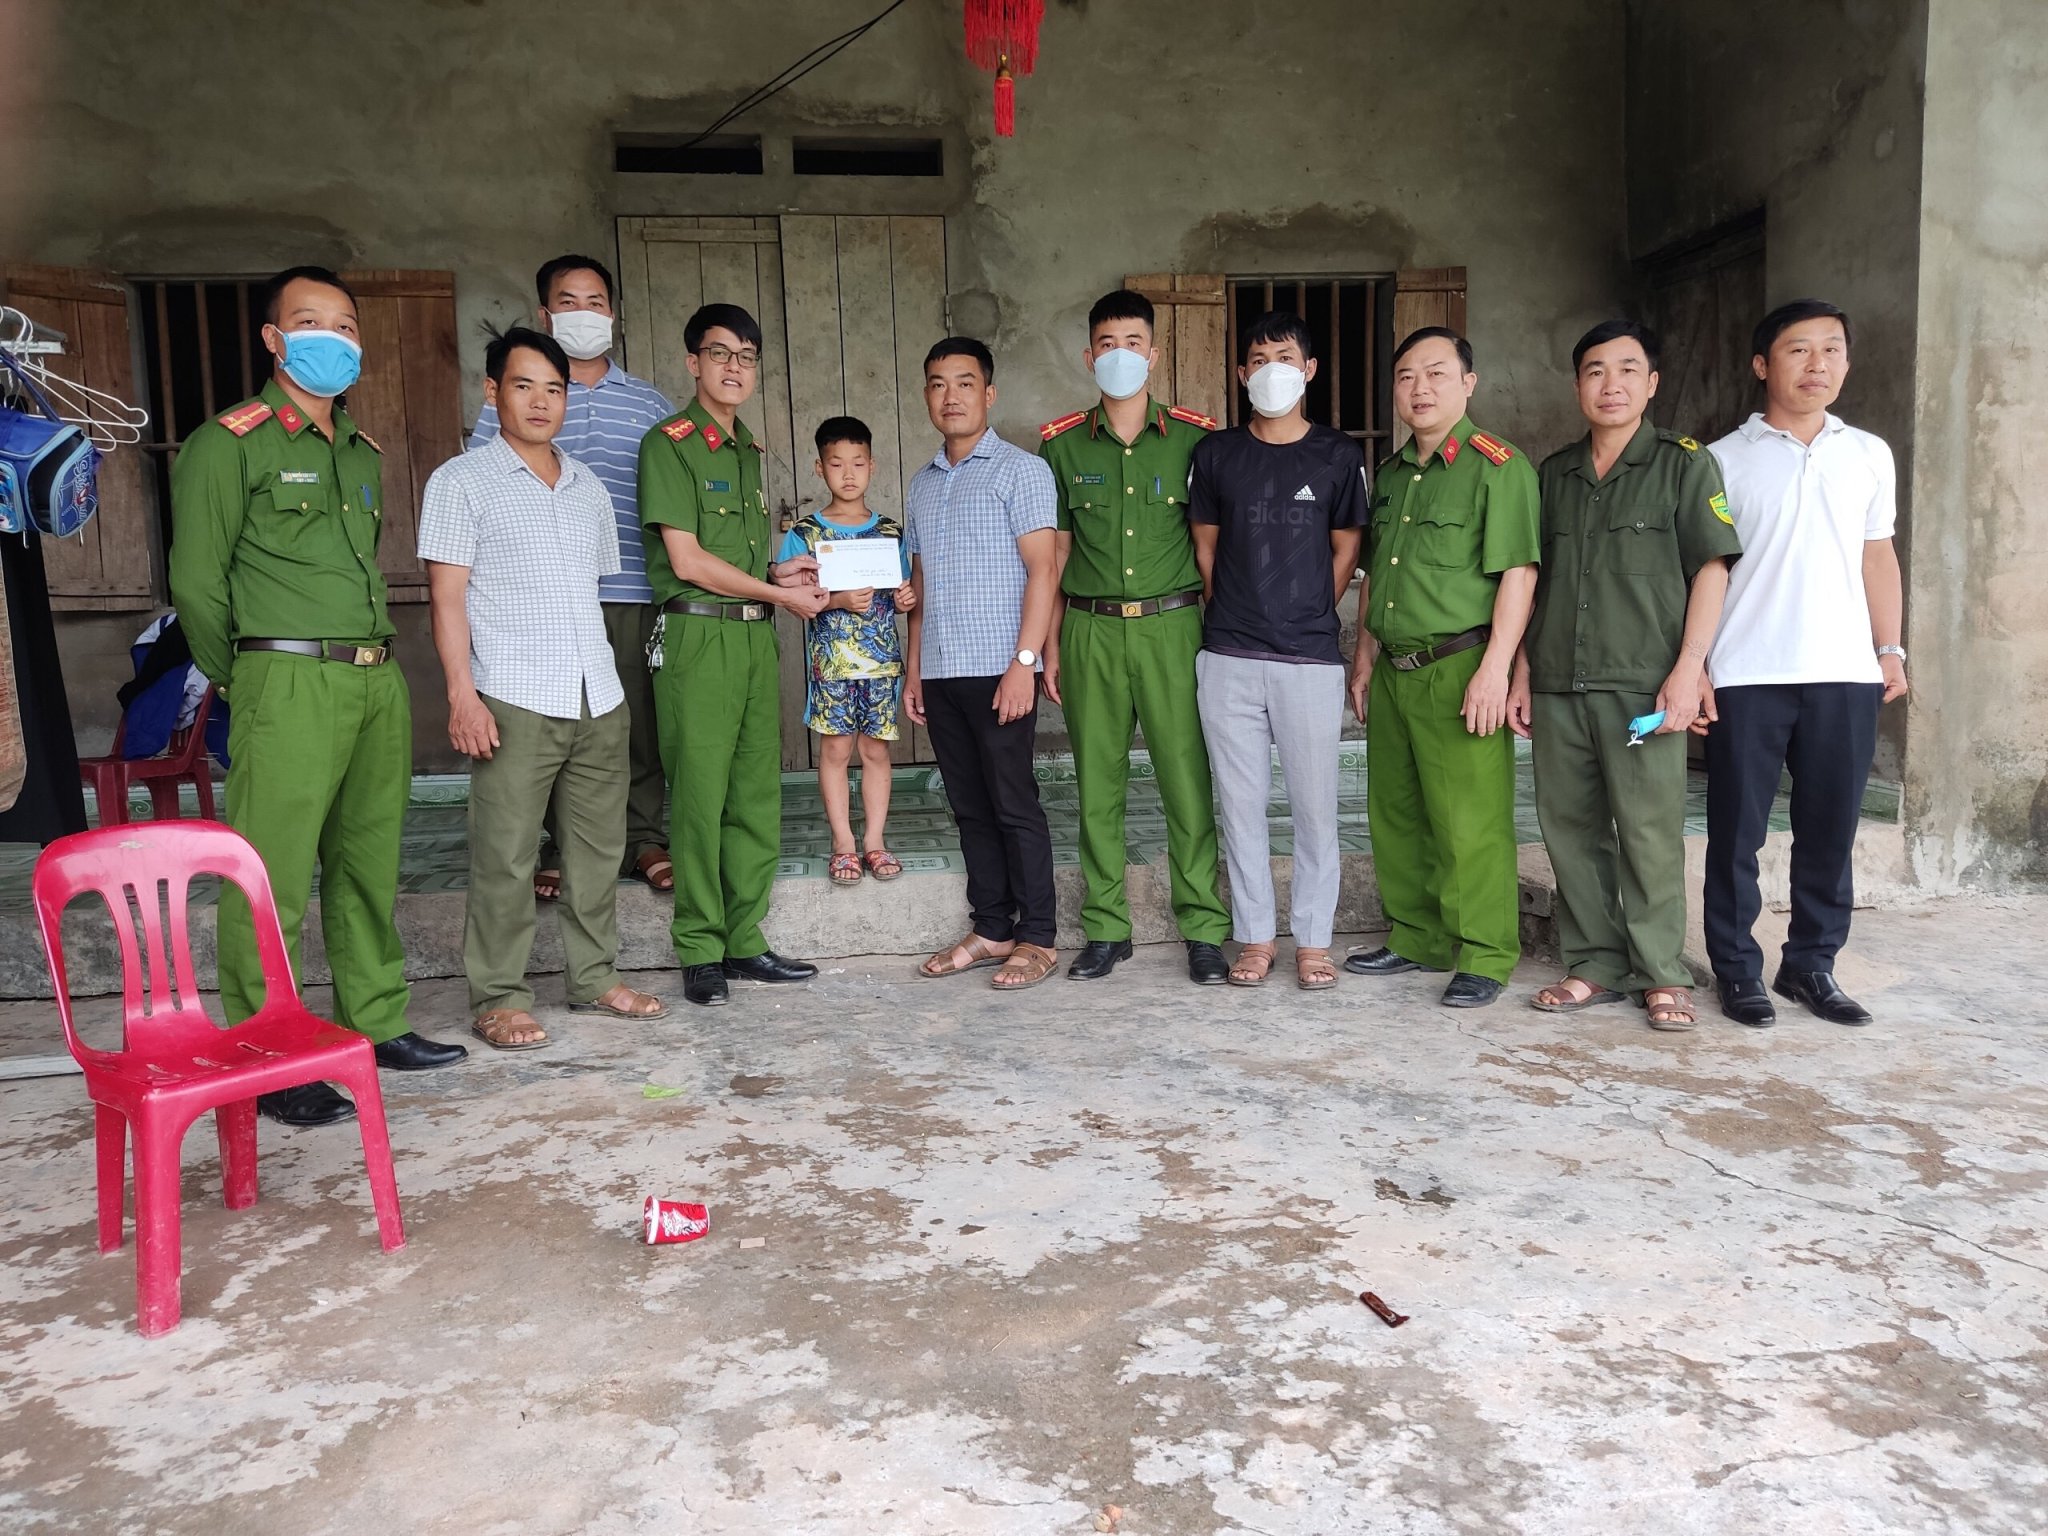 “Bí quyết” giúp công an xã xóa nạn trộm cắp, ma túy… ở vùng quê Bắc Giang - ảnh 4